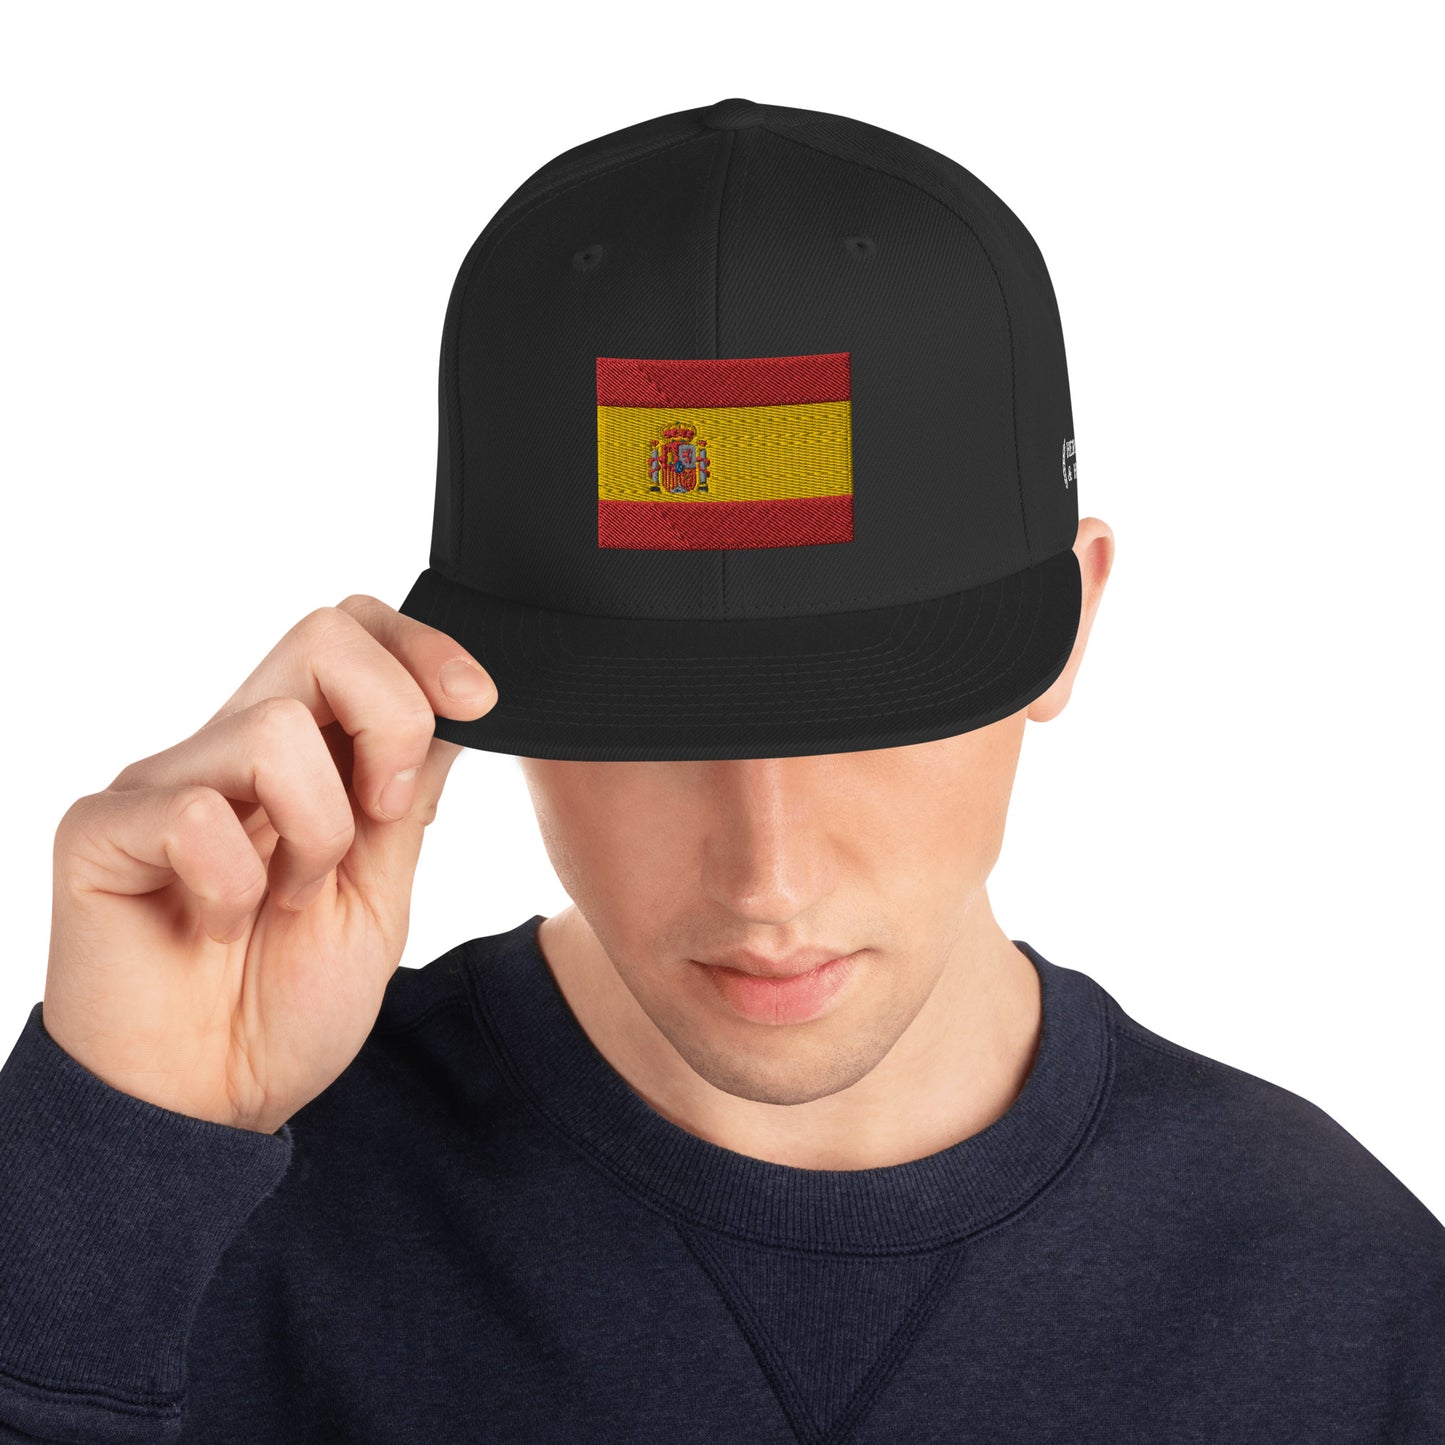 Heritage & Honor Snapback Cap 'Spain' 2